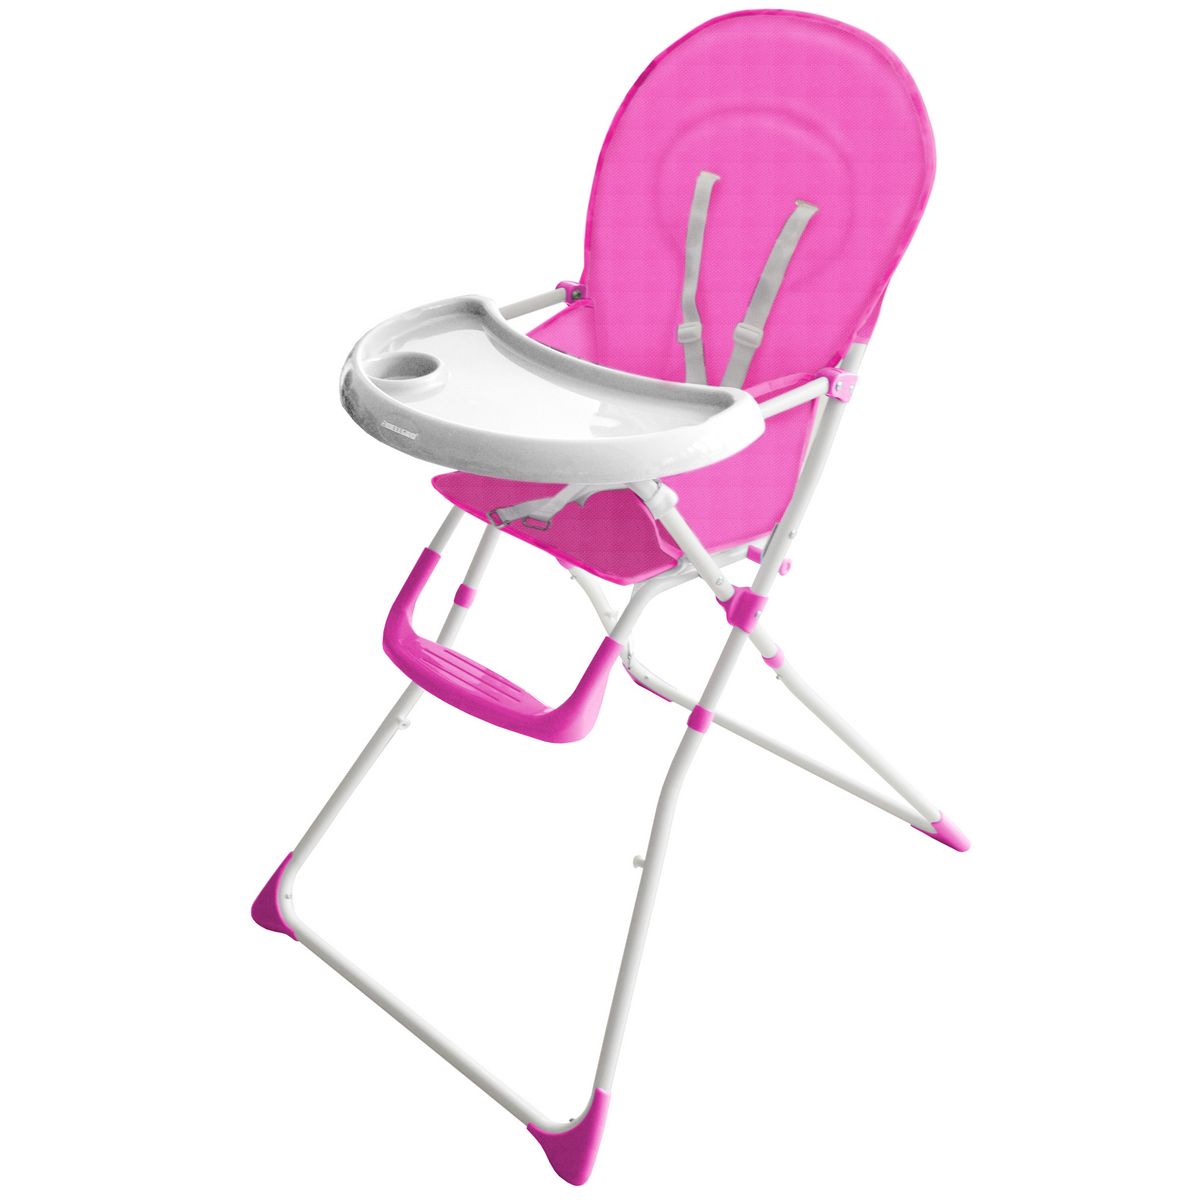 COMPTINE Chaise haute pliante bébé rose pas cher 